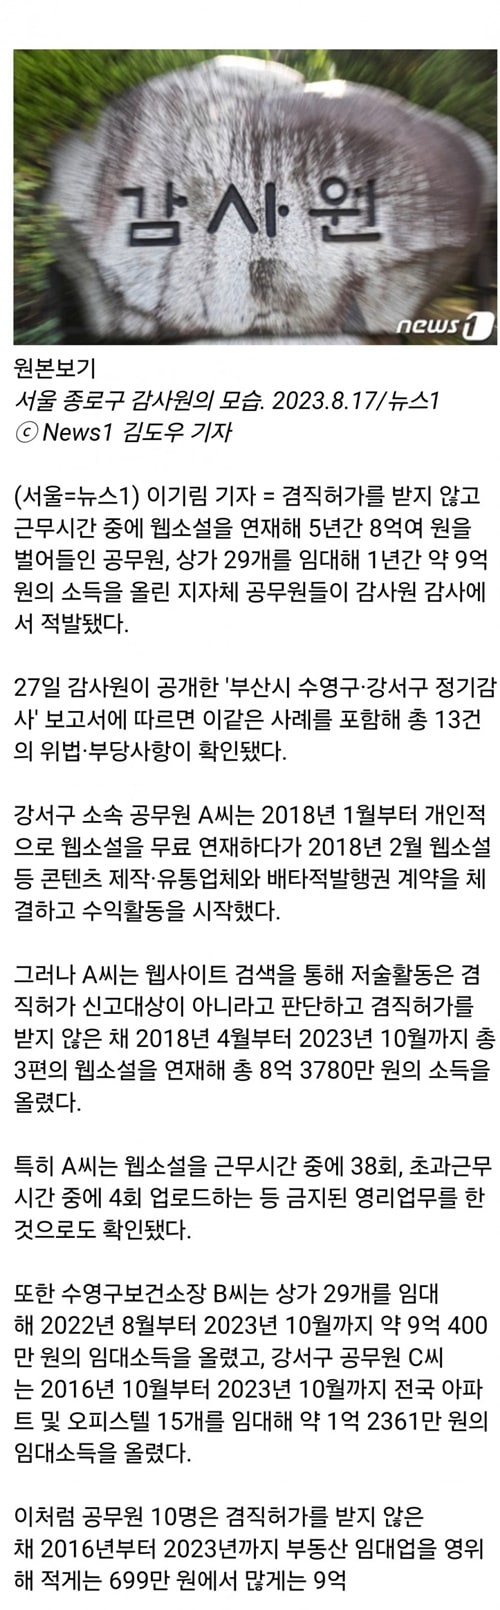 웹소설 부업' 5년간 8억, 상가 29채 '임대왕' 공무원…겸직 위반